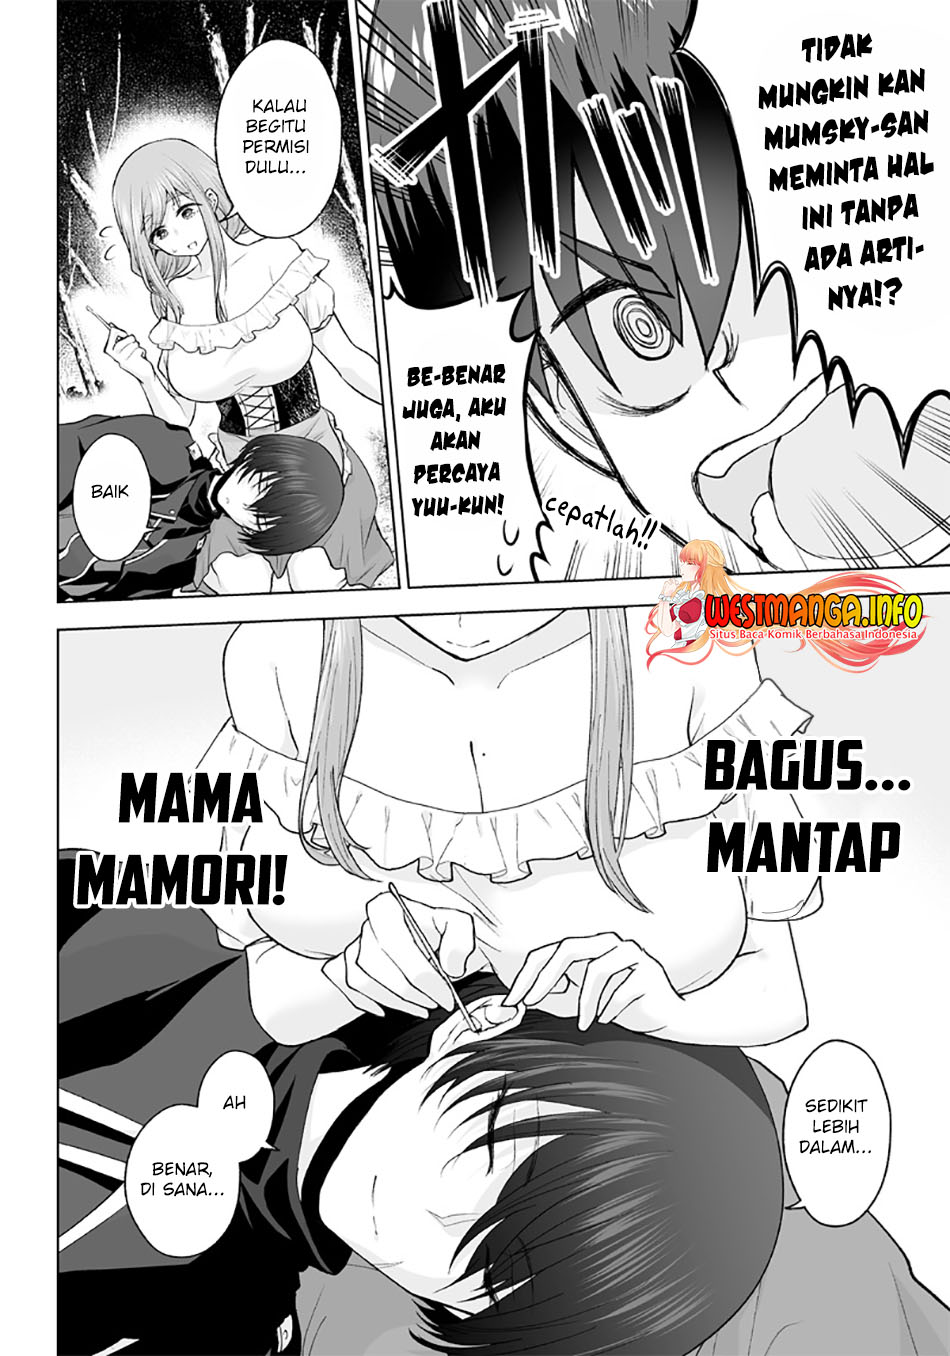 Mamori Mama Wa o Yobi janai no!?〜 Isekai Musuko Hankoki 〜 Chapter 7